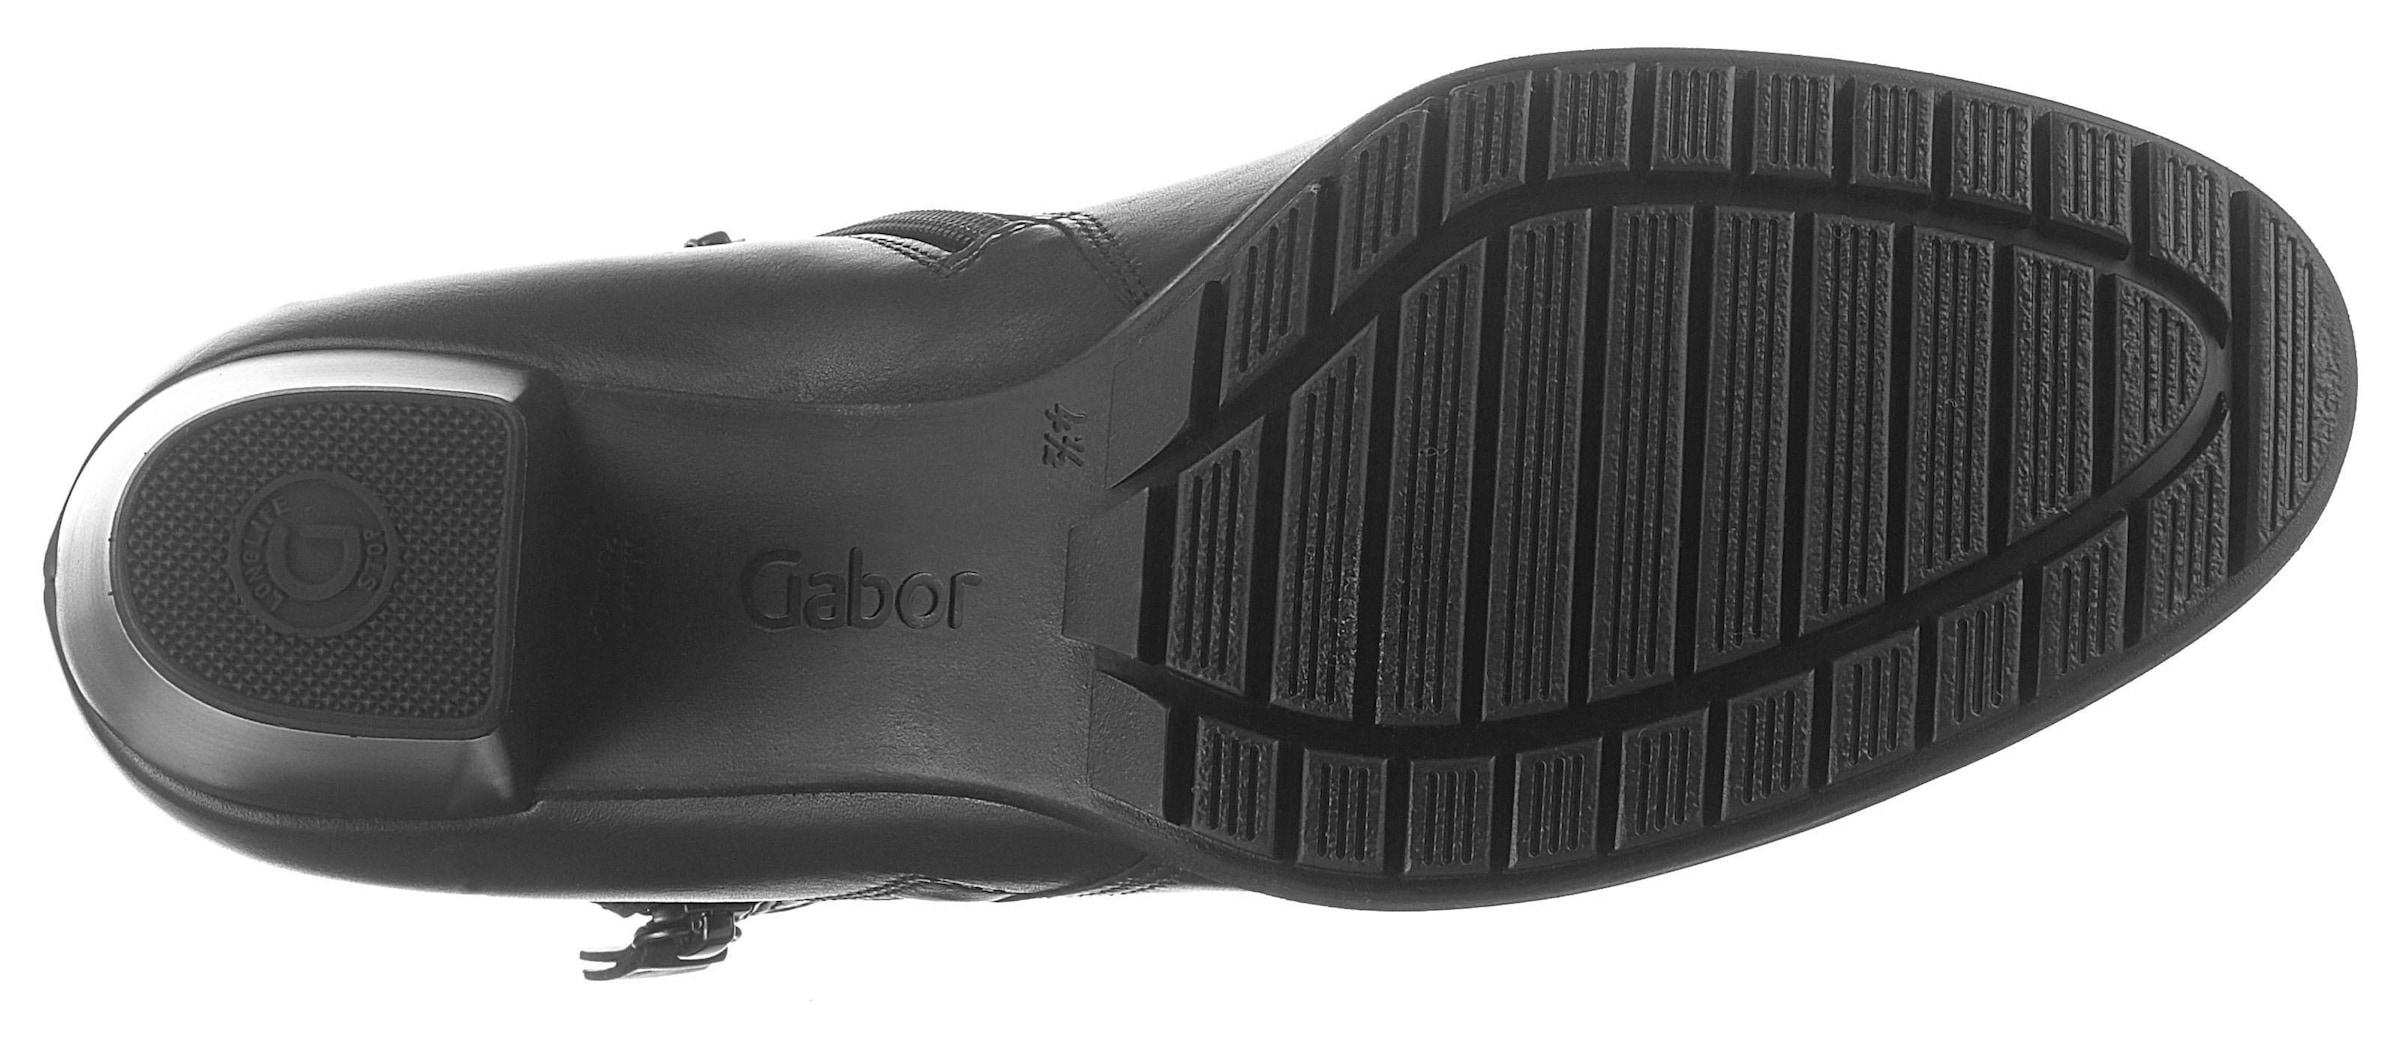 Gabor Ankleboots »Palma«, mit Zierreissverschluss an der Aussenseite, G-Weite